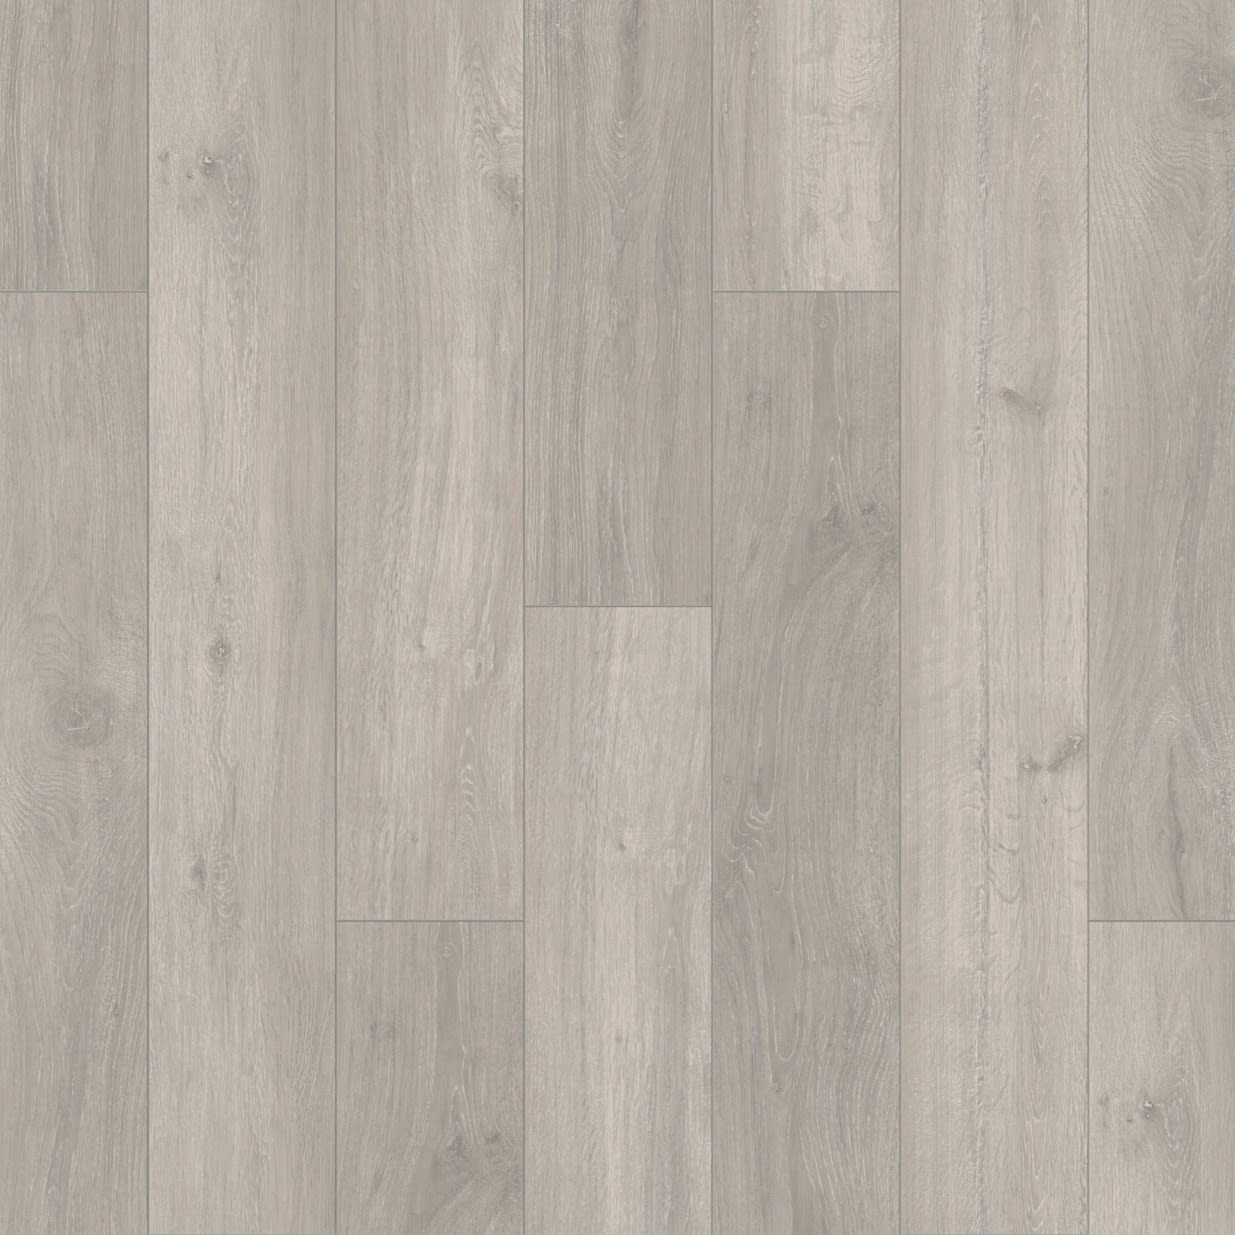 Underlay | Thermal, Wood & Laminate Floor Underlay | Wickes